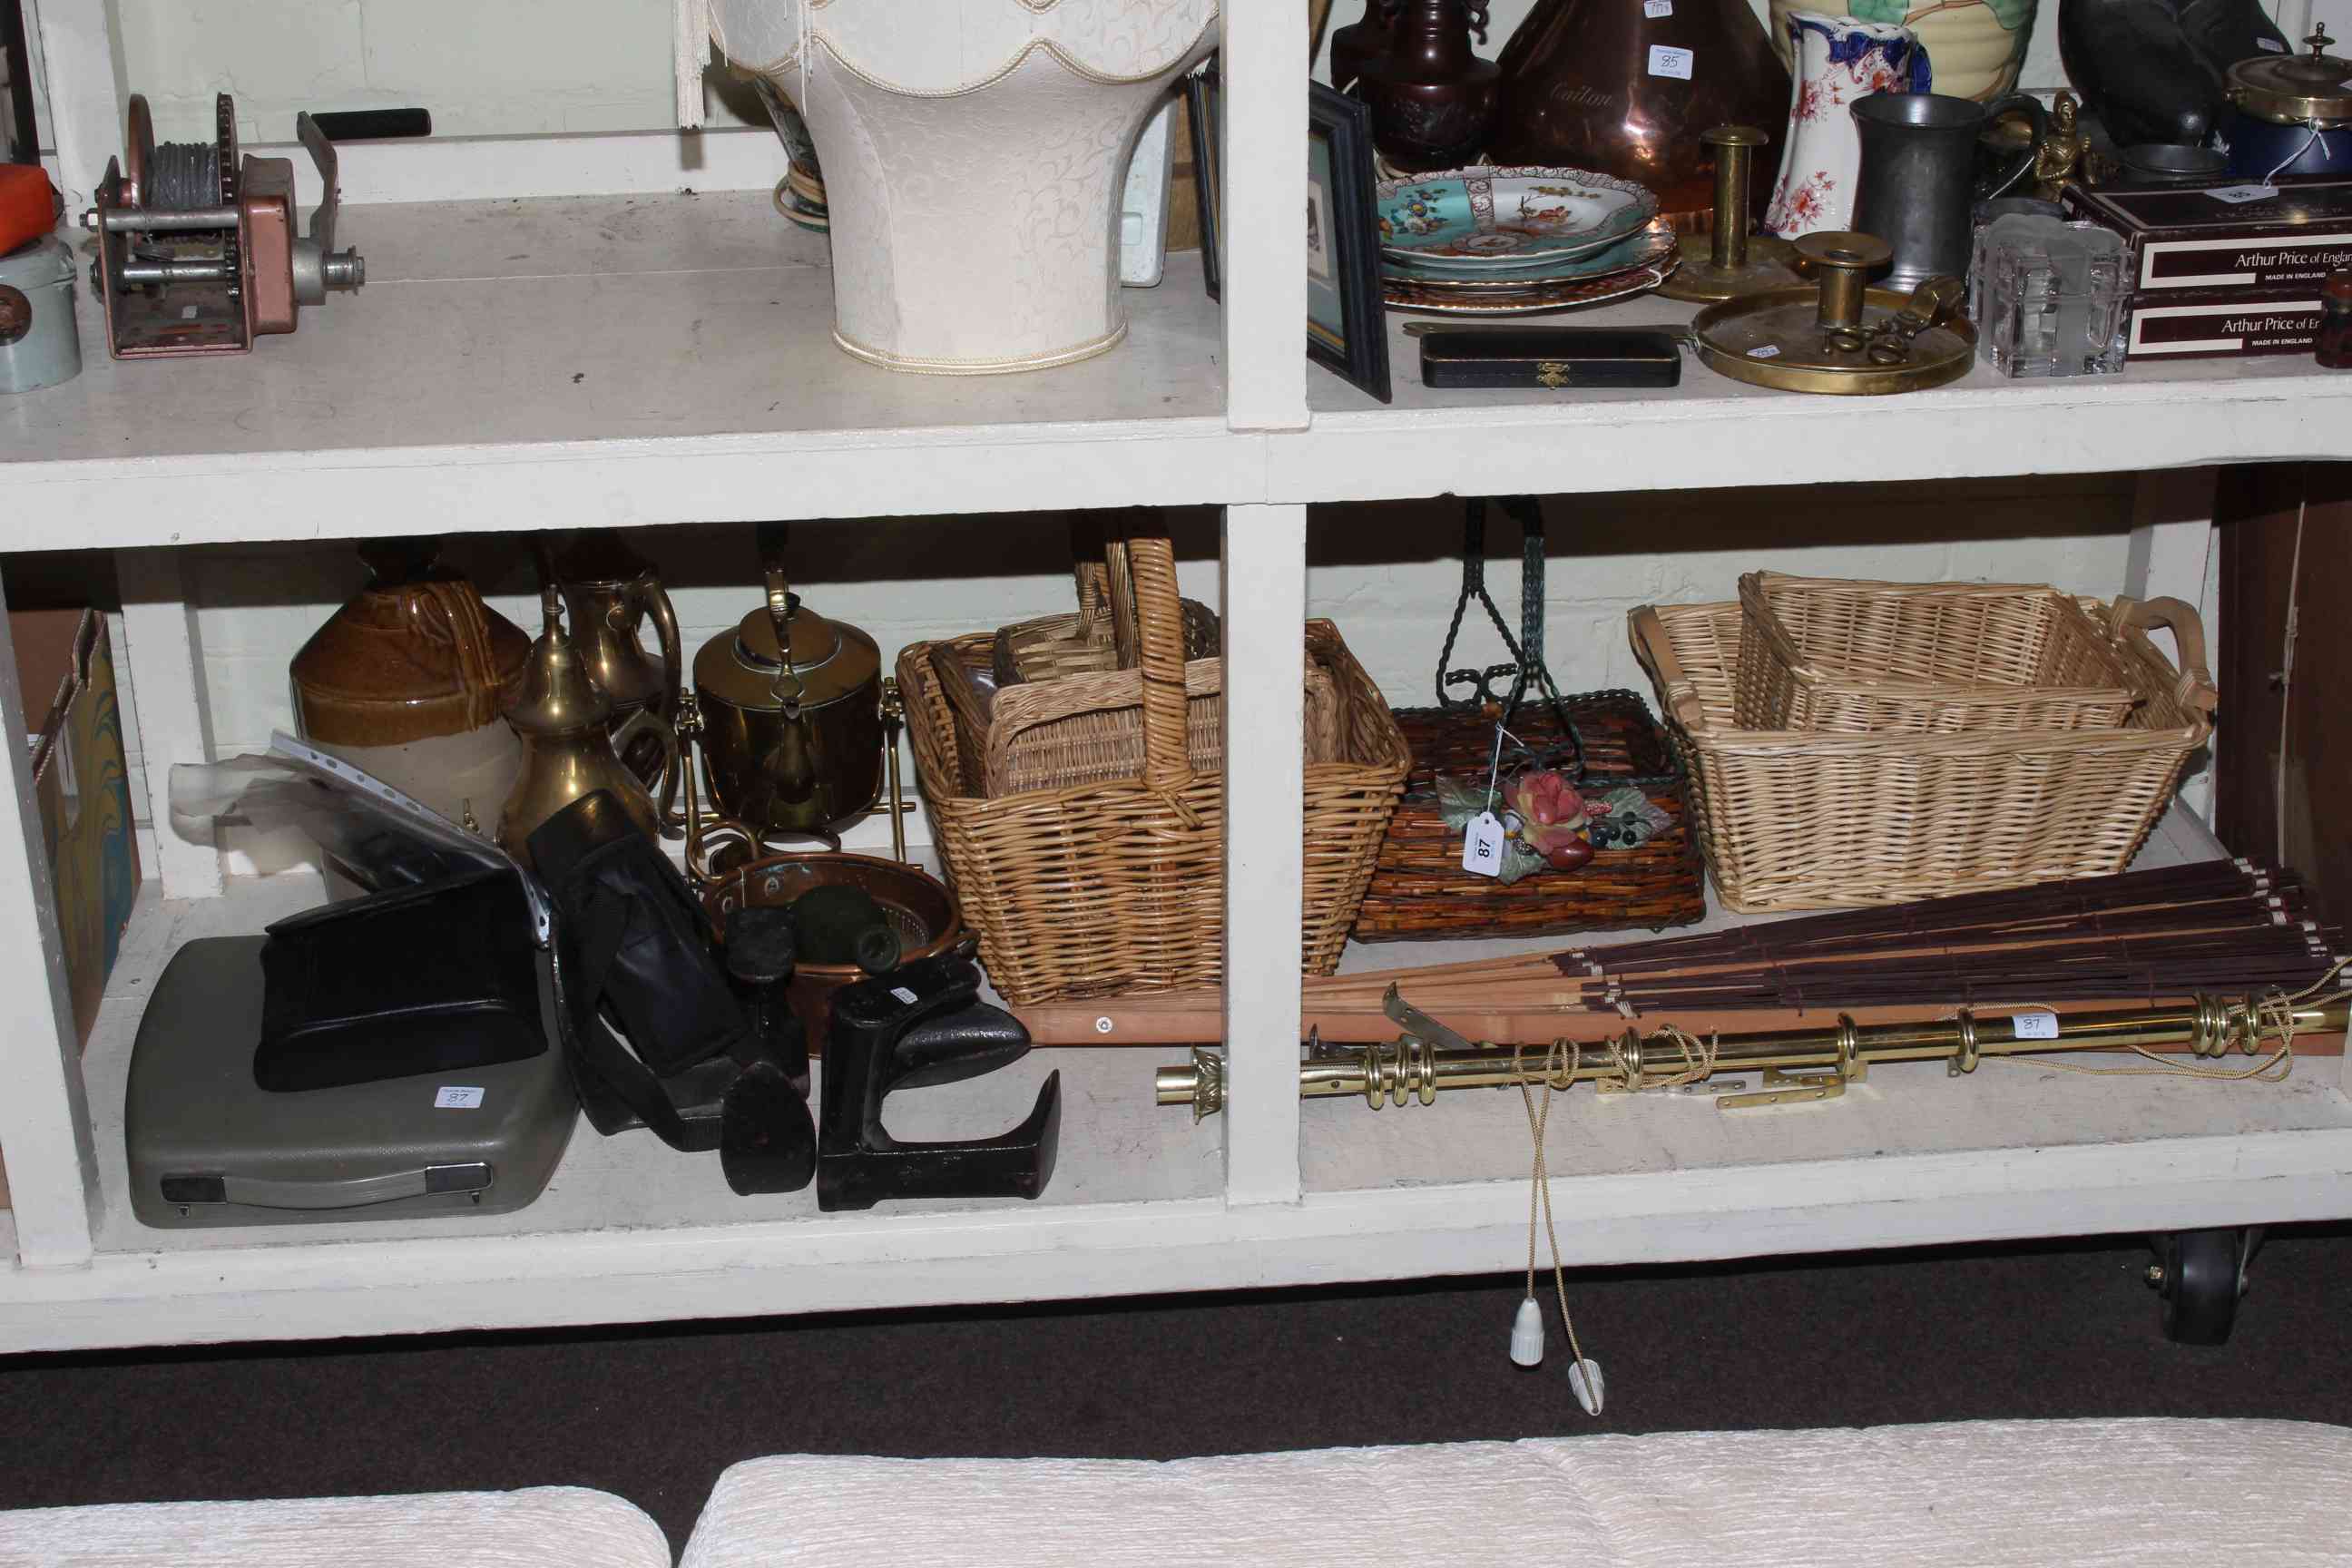 Collection of wicker baskets, binoculars, fan, metalwares, stone bottle, etc.